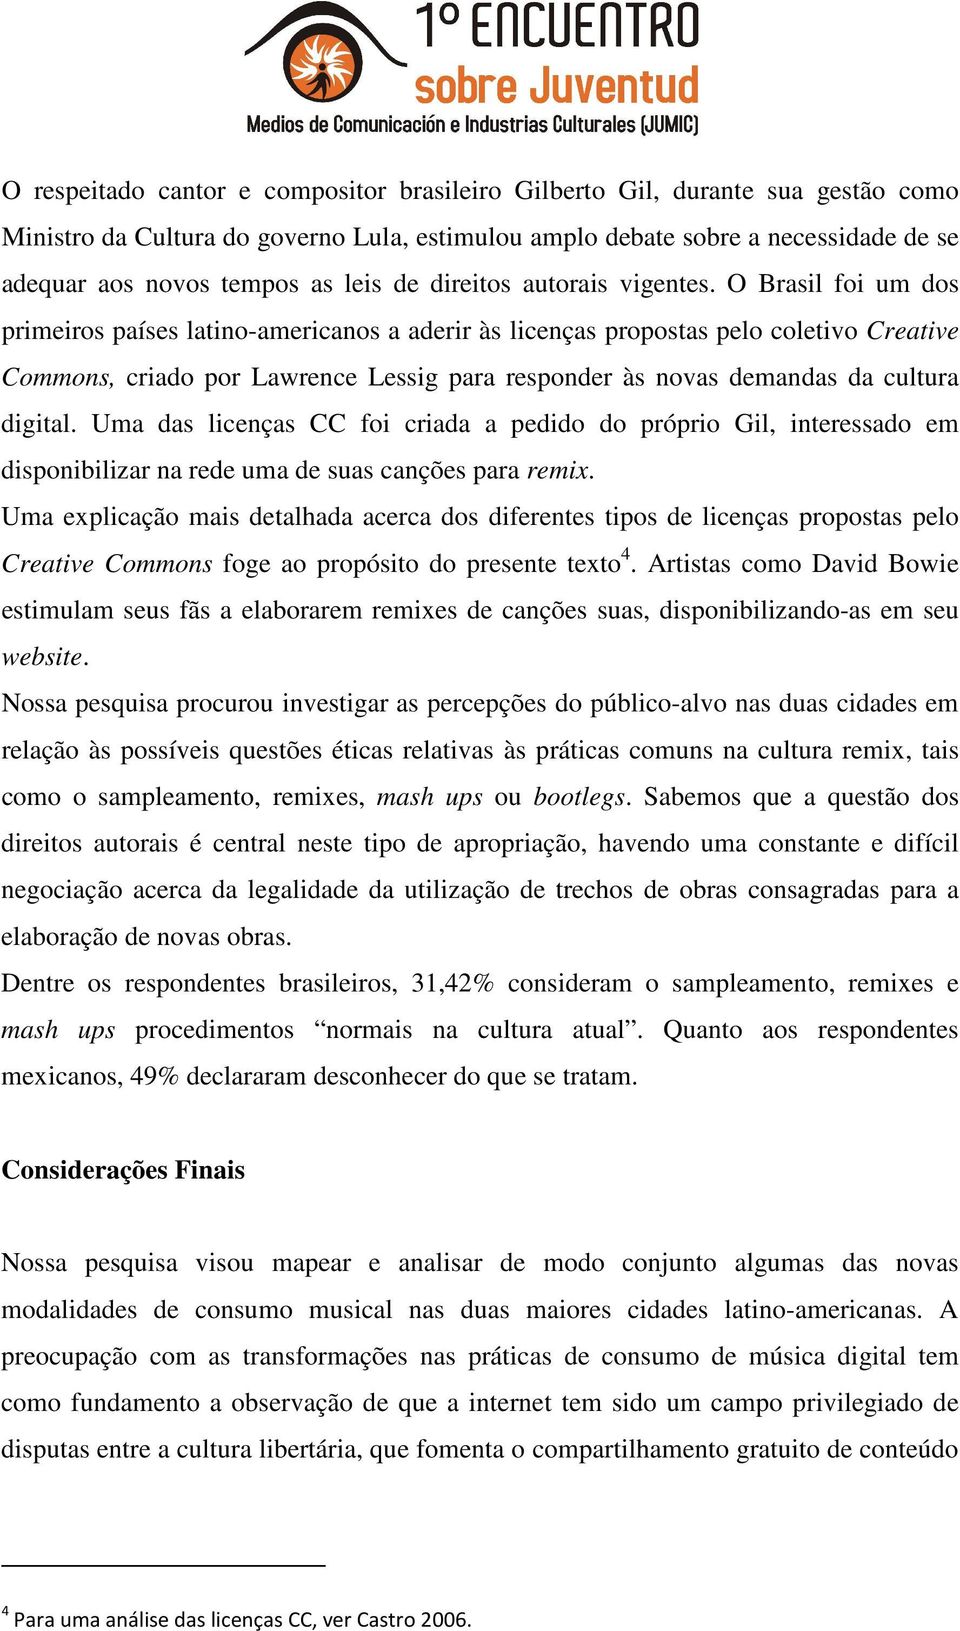 O Brasil foi um dos primeiros países latino-americanos a aderir às licenças propostas pelo coletivo Creative Commons, criado por Lawrence Lessig para responder às novas demandas da cultura digital.